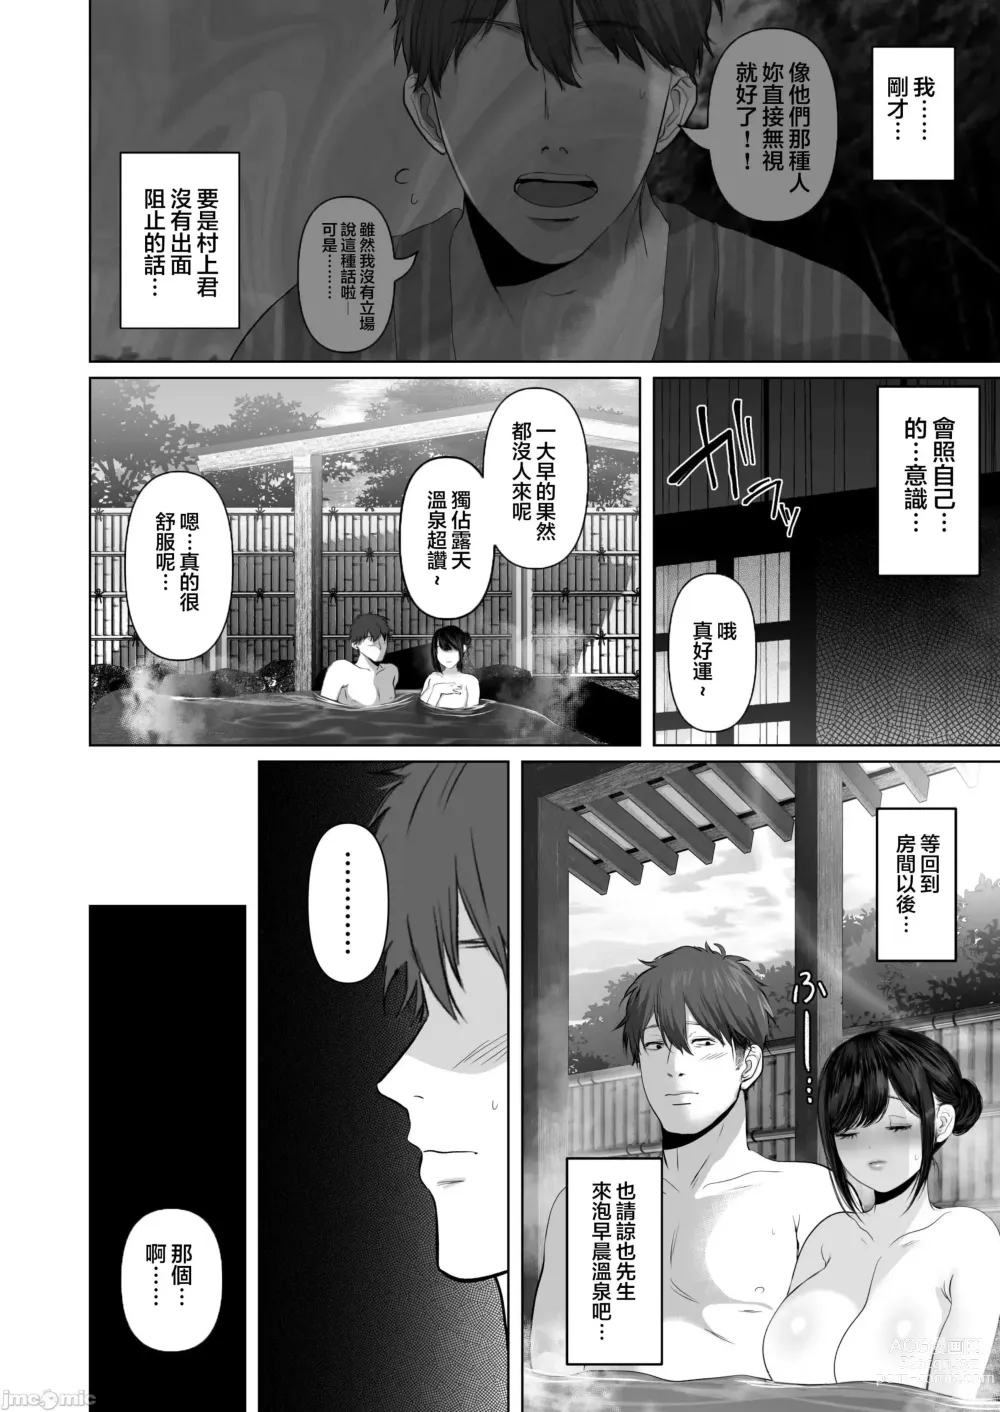 Page 554 of doujinshi Anata ga Nozomu nara 1-5